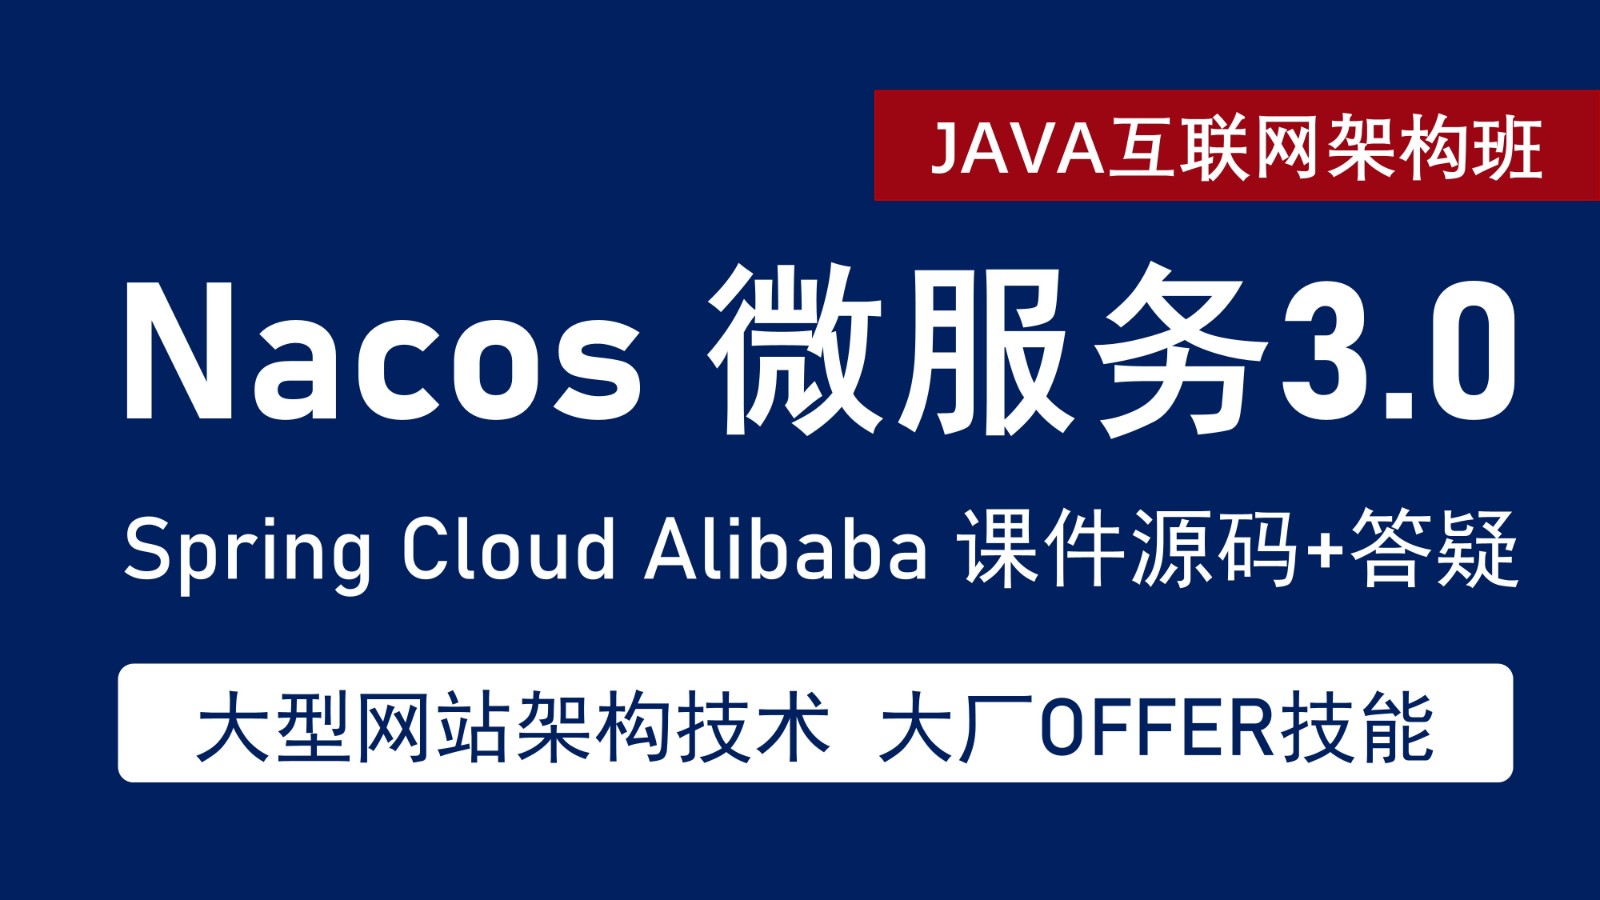 Spring Cloud Alibaba Nacos 微服务3.0 系统架构实战